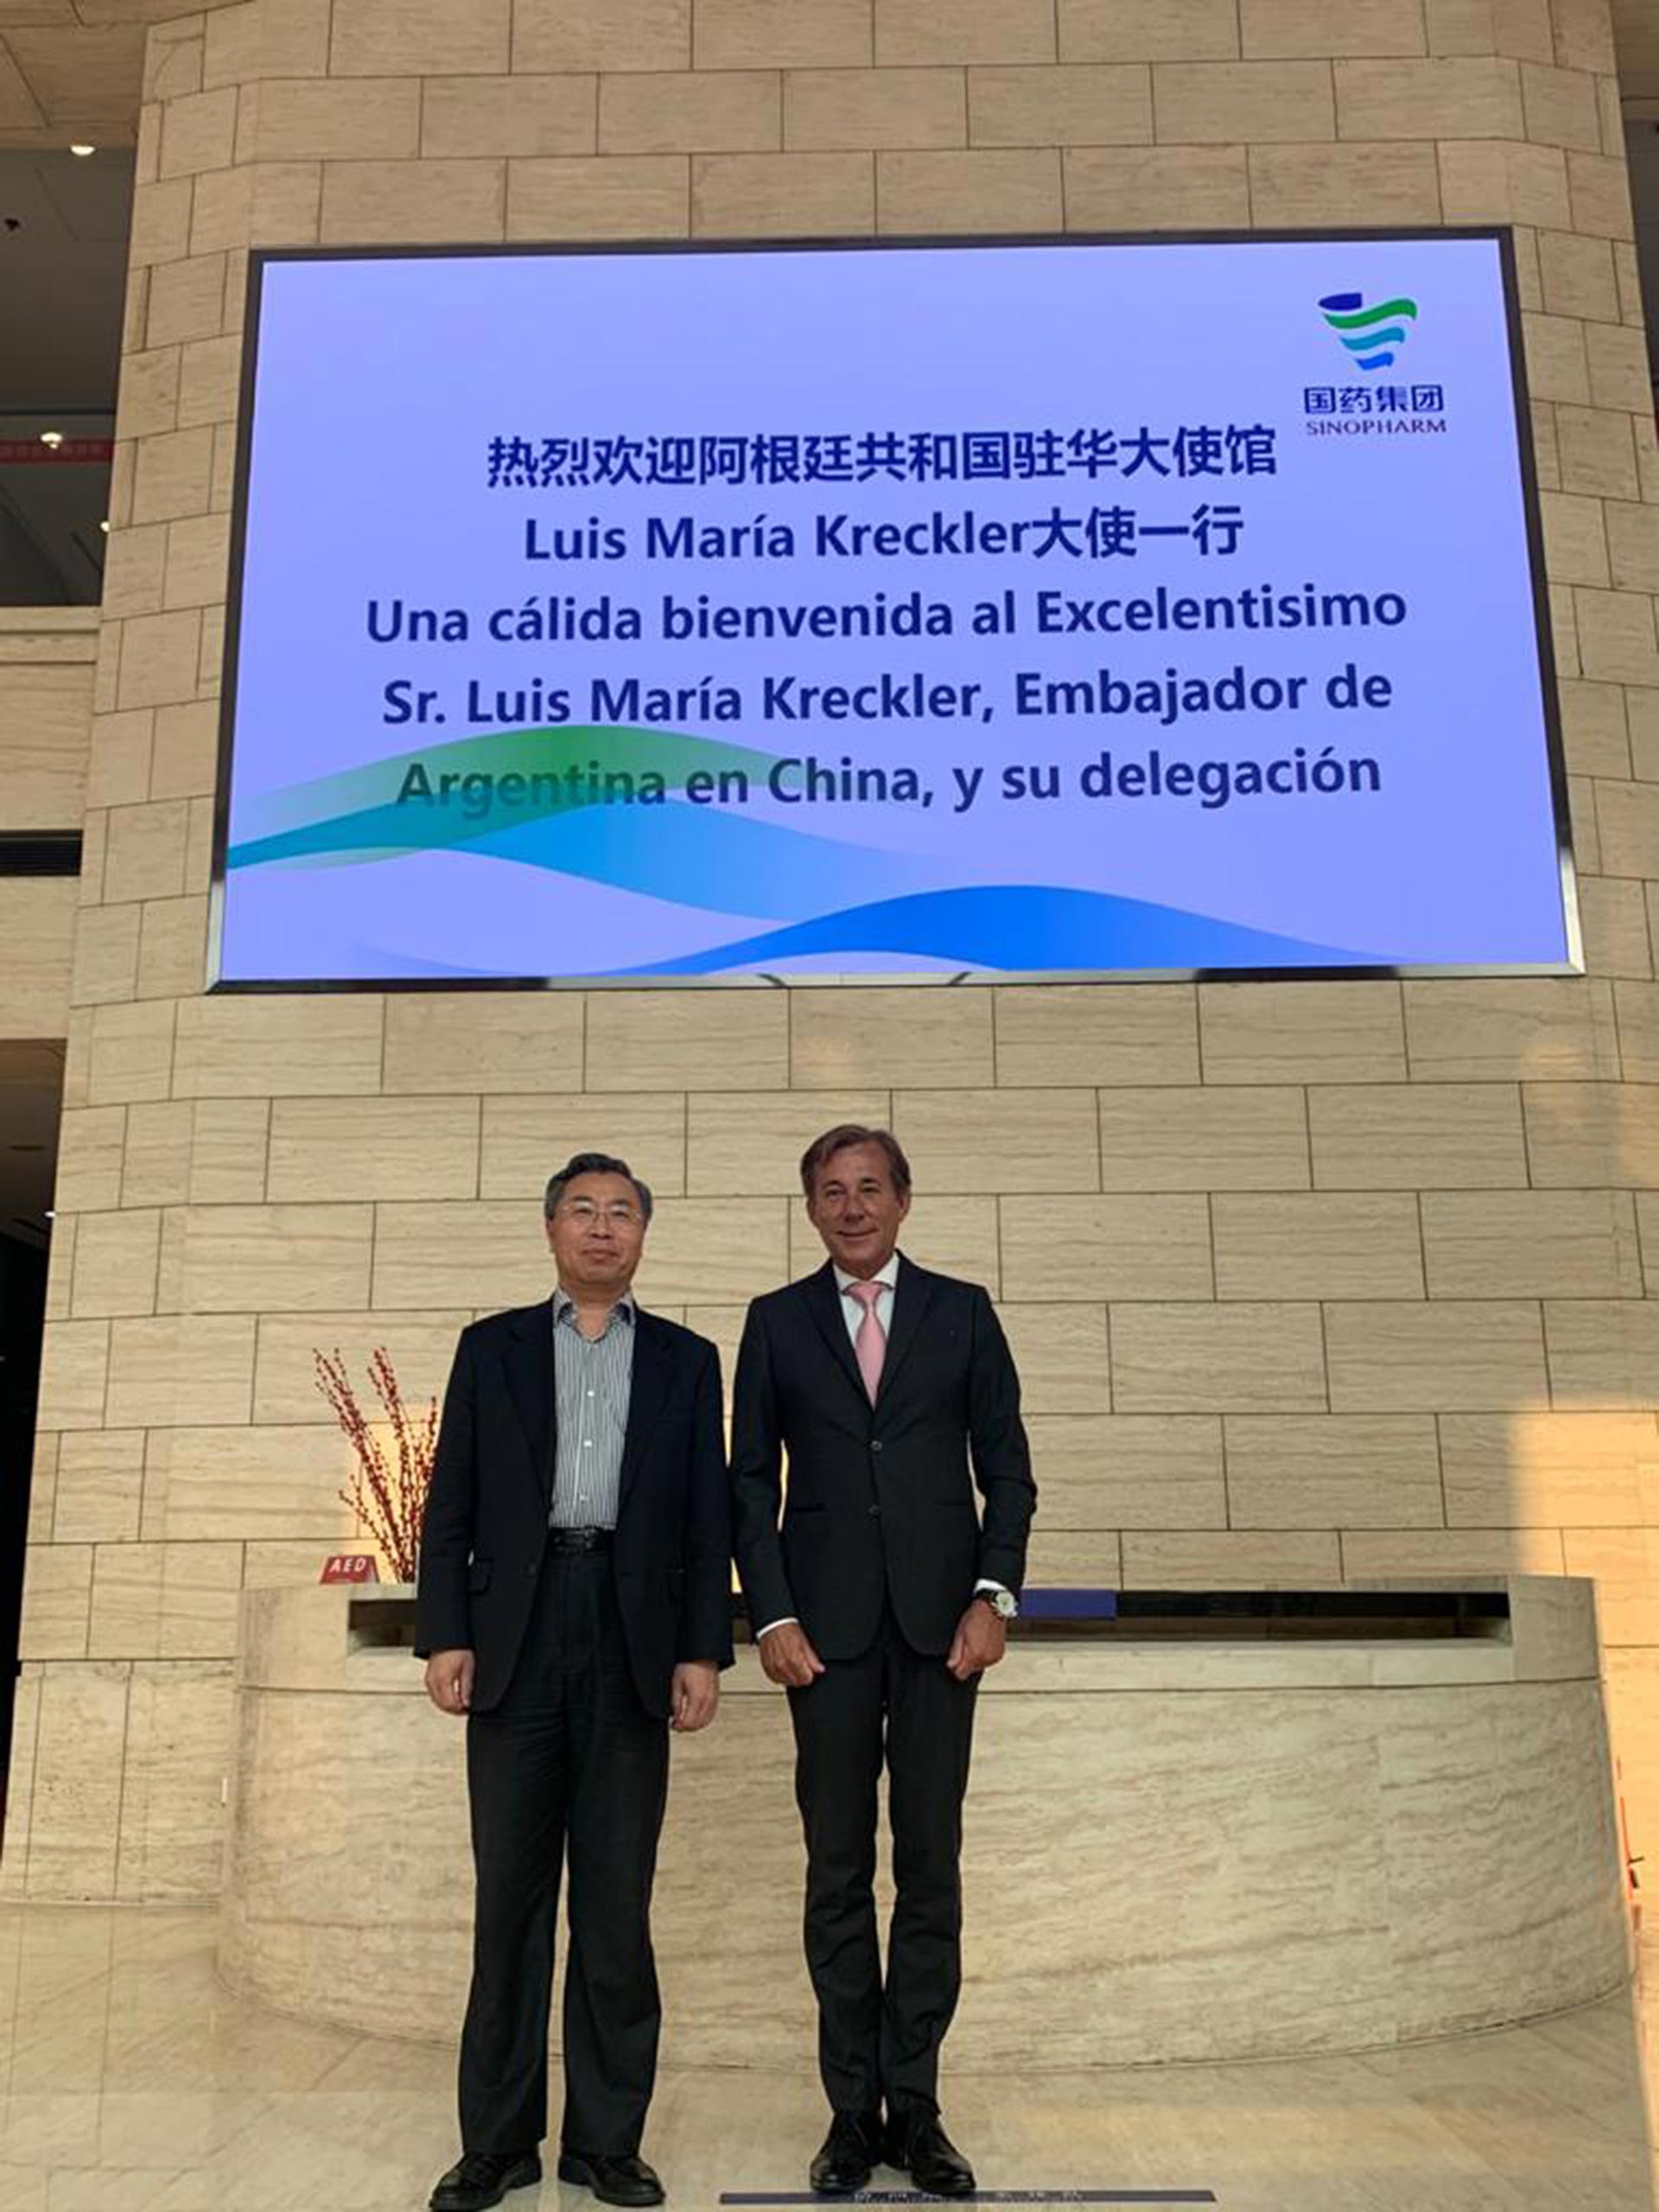 Luis Maria Kreckler con Liu Jingzhen, presidente de la compañía farmacéutica Sinopharm